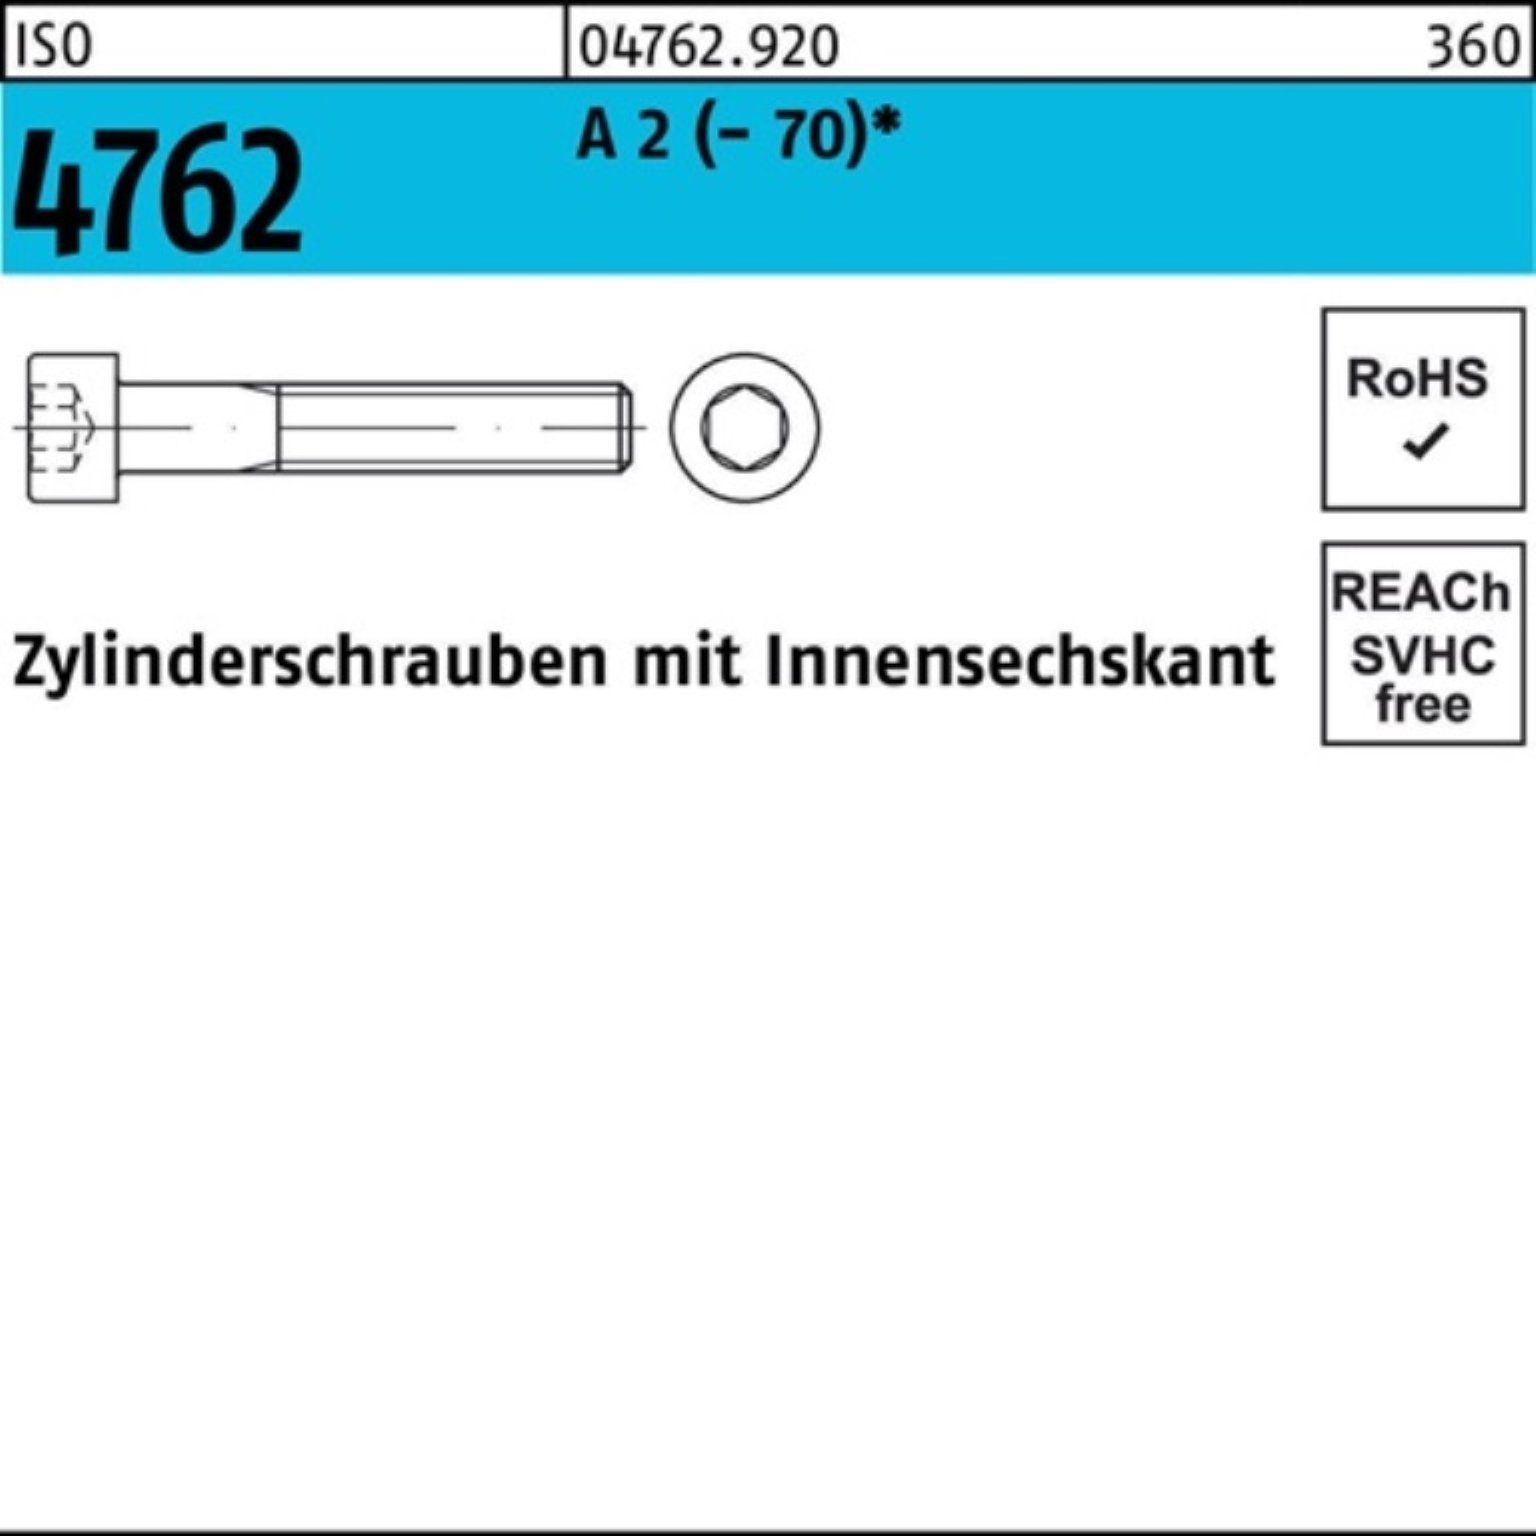 Reyher 22 S A Innen-6kt ISO Zylinderschraube 100 (70) M5x 4762 2 Zylinderschraube Pack 100er